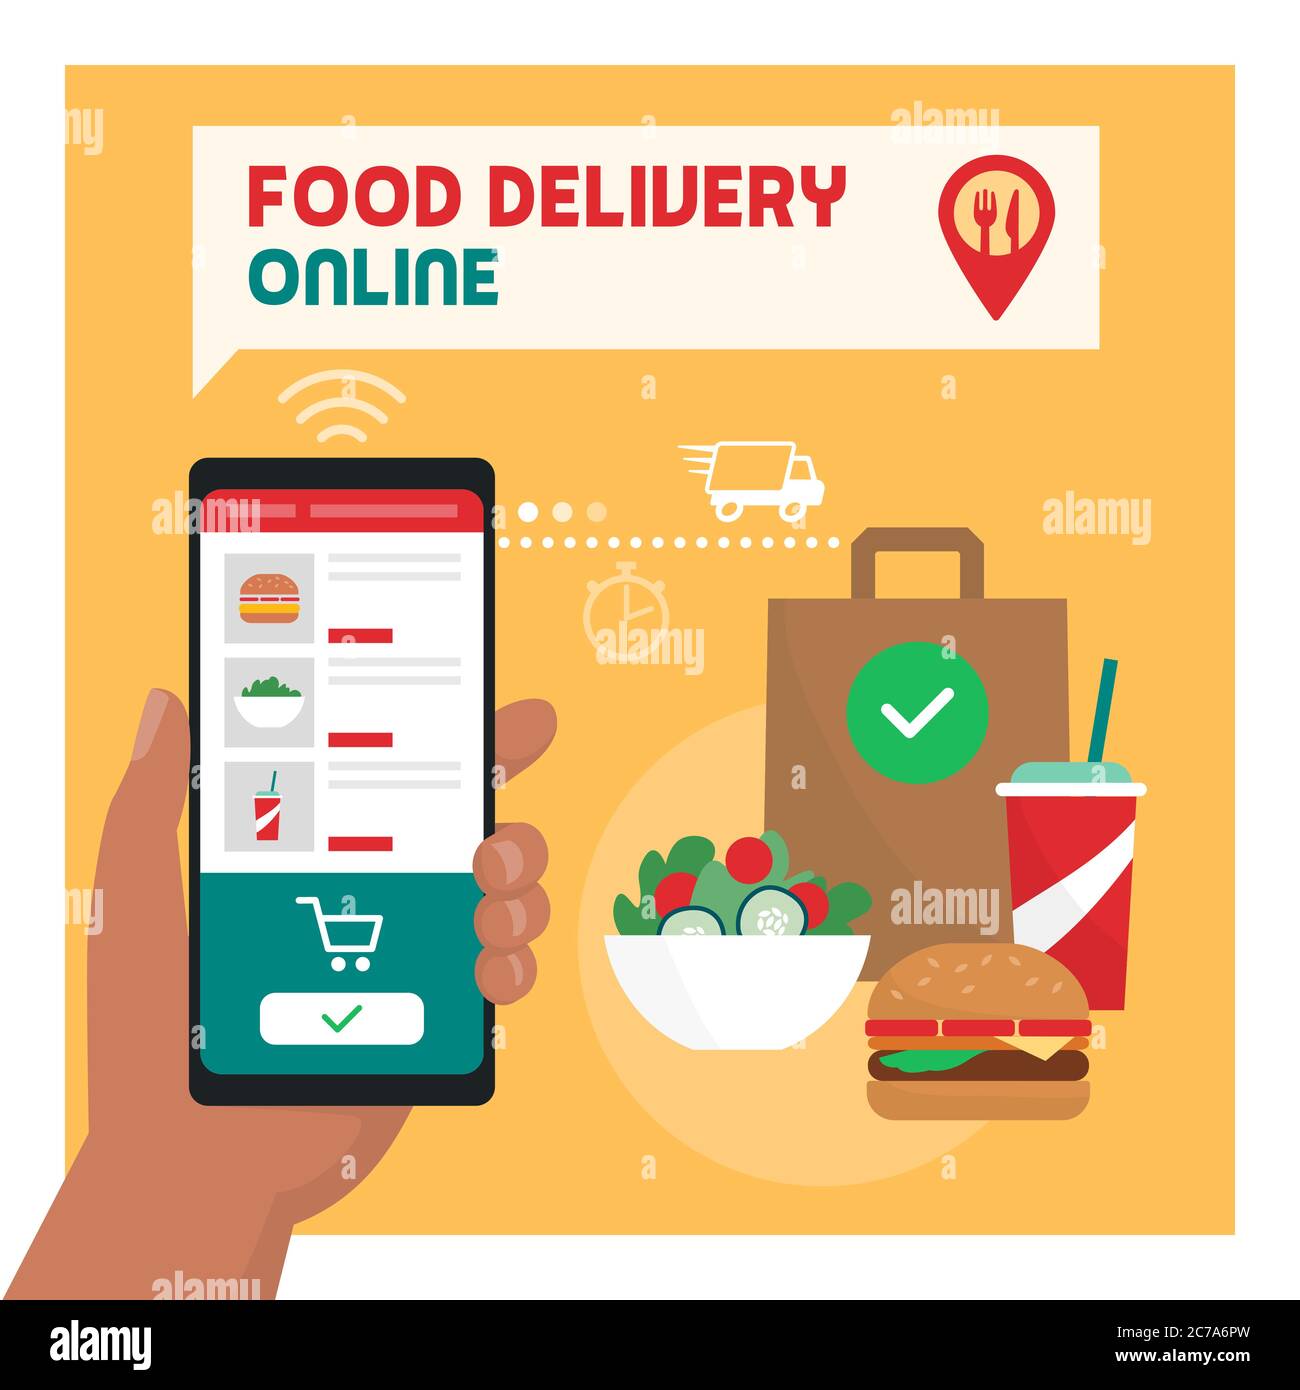 Consegna di cibo online: L'utente ordina un pasto pronto utilizzando un'app mobile, cibo fresco delizioso in background Illustrazione Vettoriale